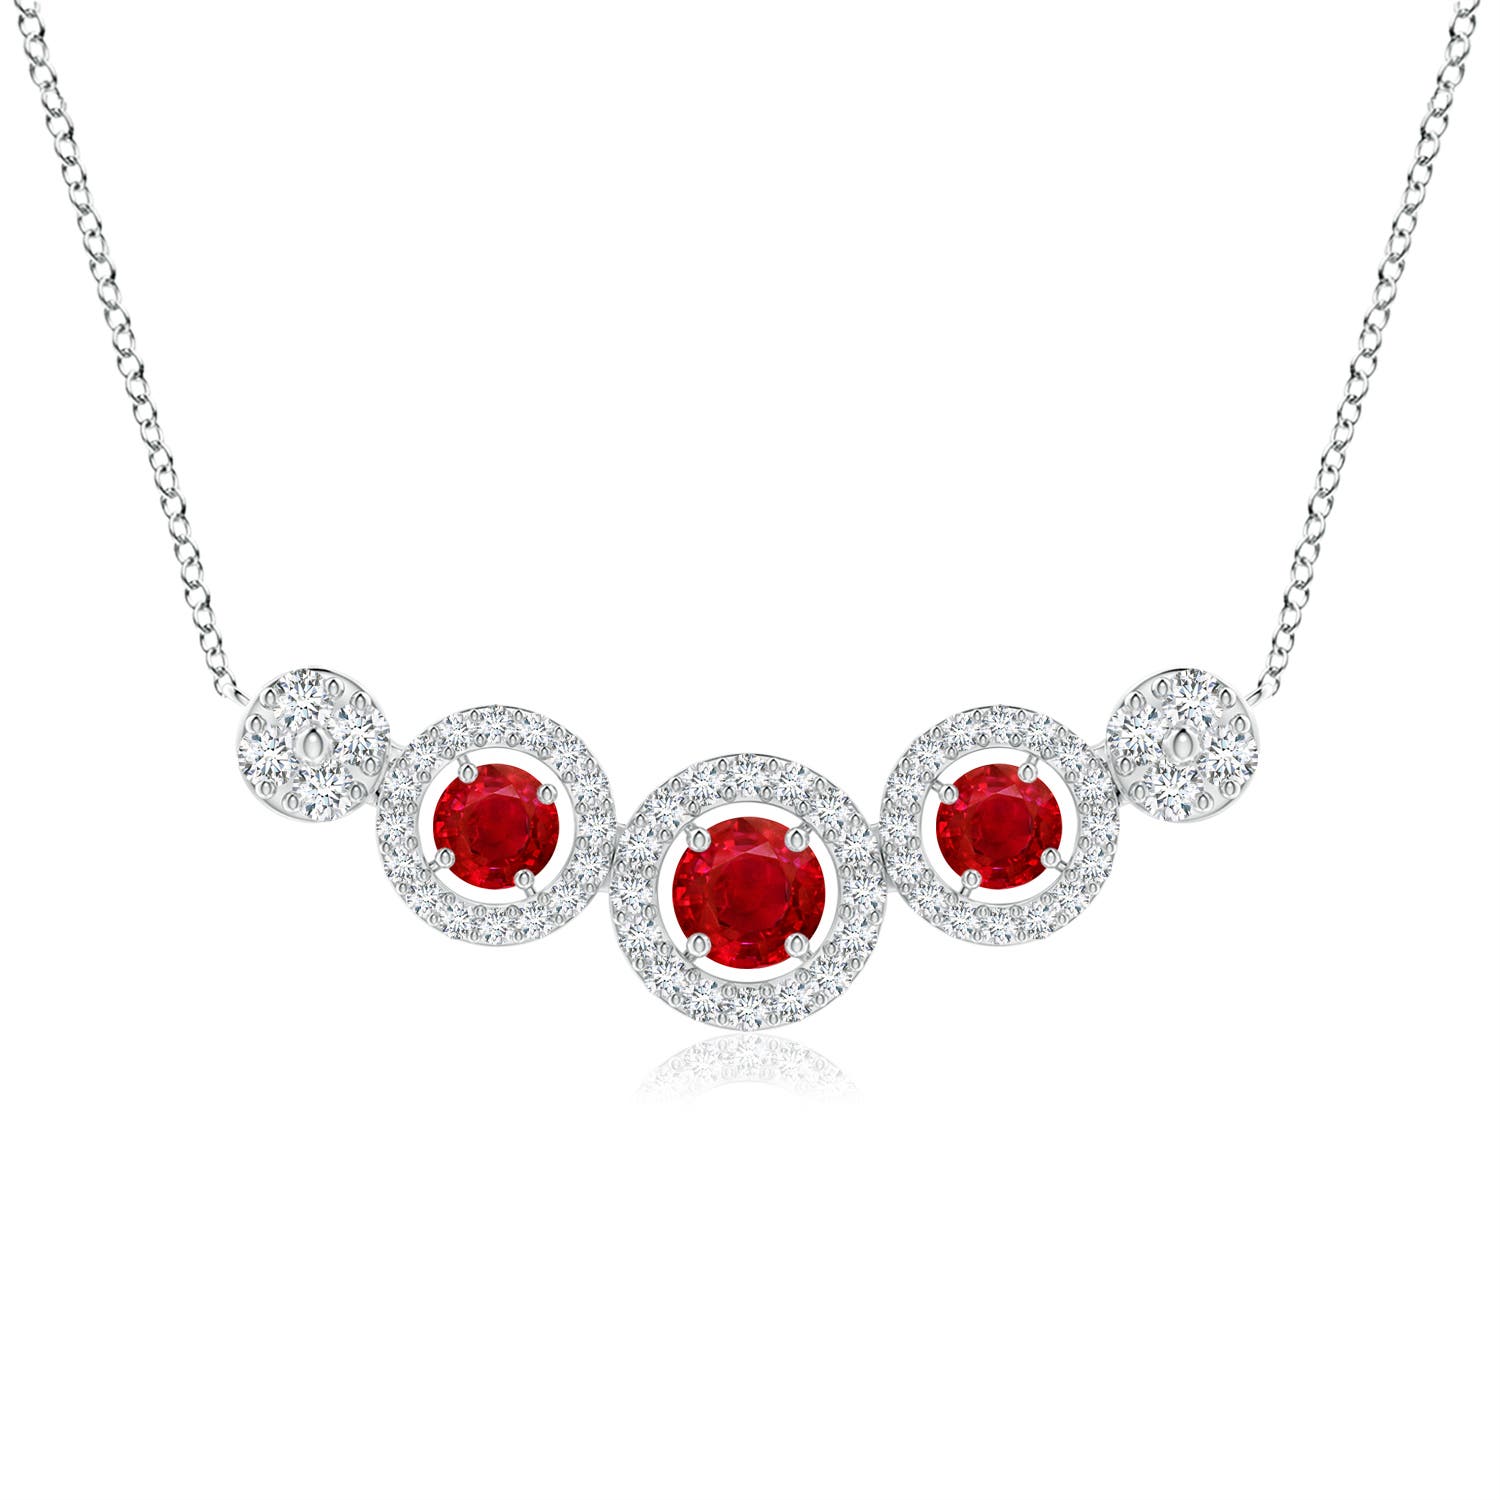 Round Ruby and Diamond Halo Necklace | Angara